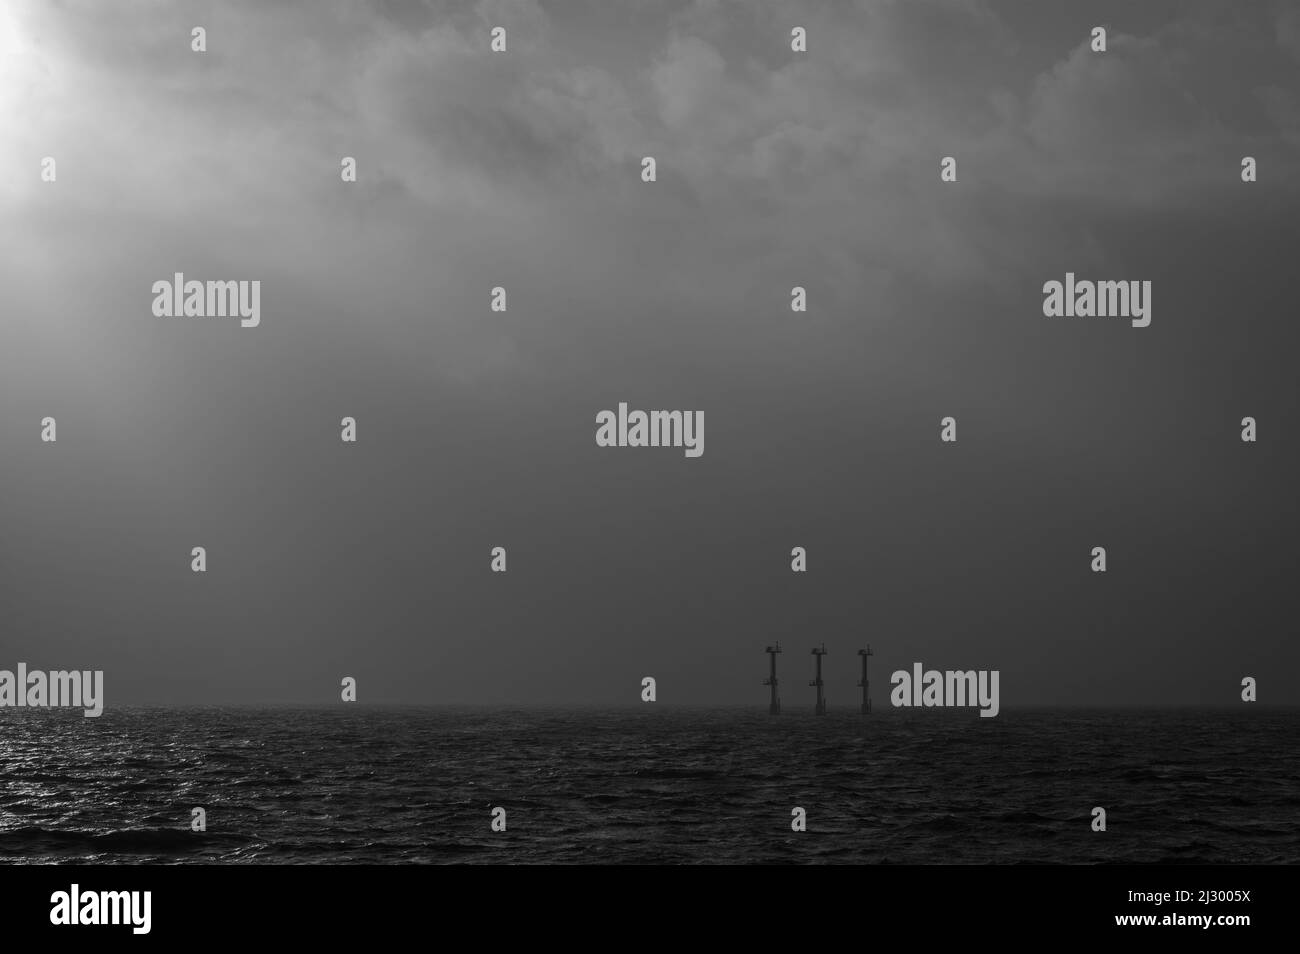 Vue sur Solent depuis le front de mer de Southsea, Portsmouth, Hants, Angleterre avec les balises de navigation juste visibles à l'approche d'une douche. Banque D'Images